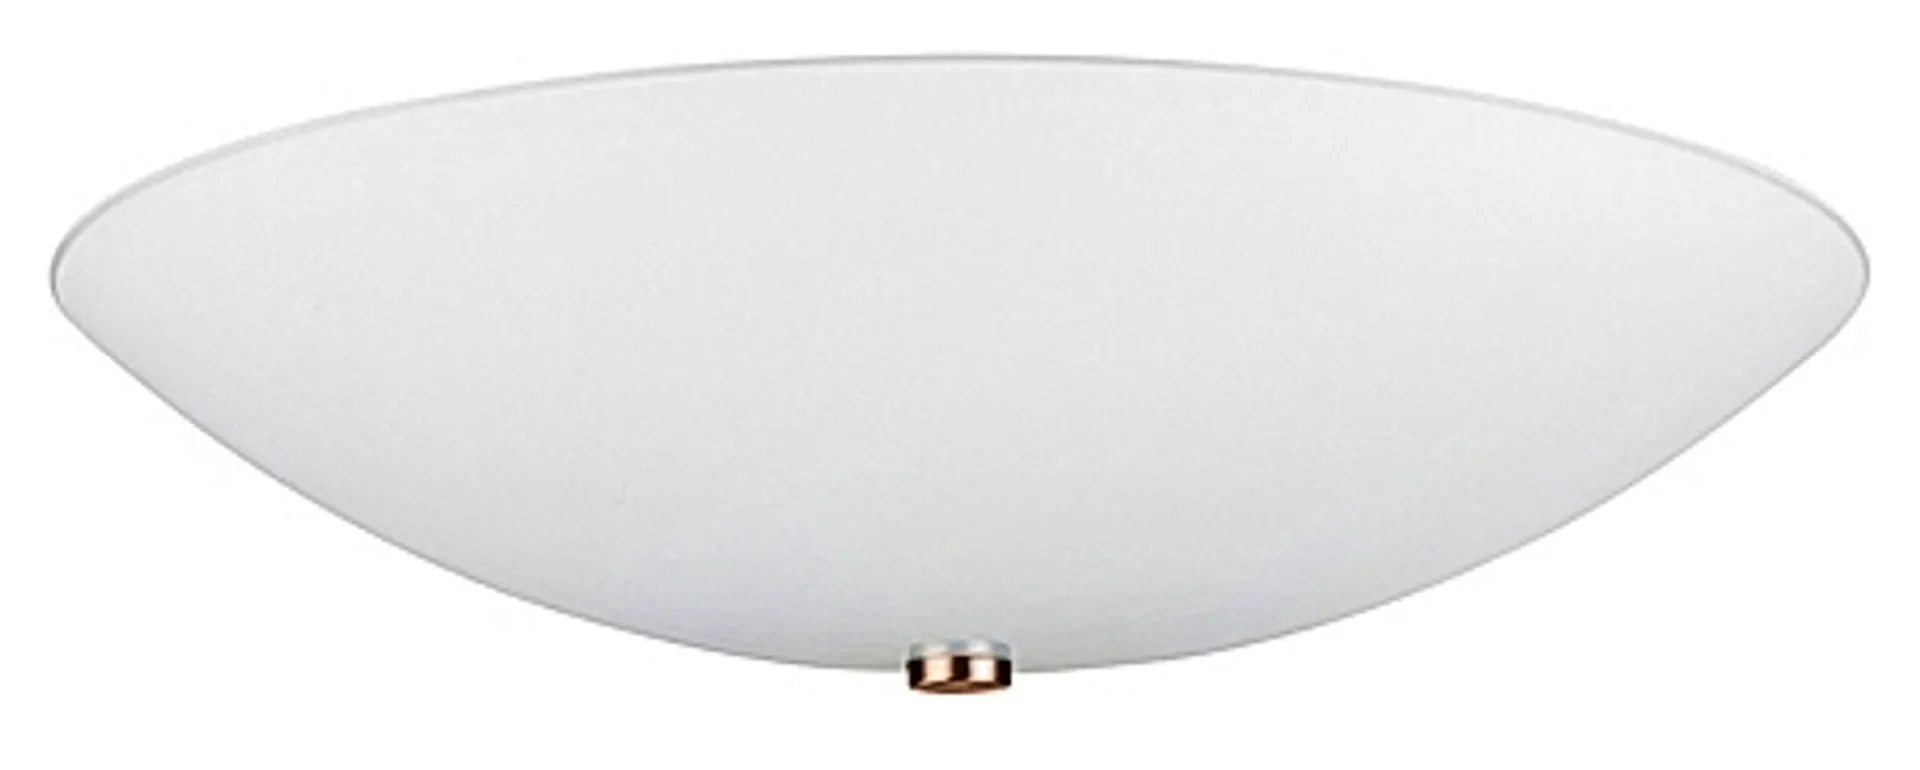 Heat kattoplafondi Gala Opal 60 cm - 1